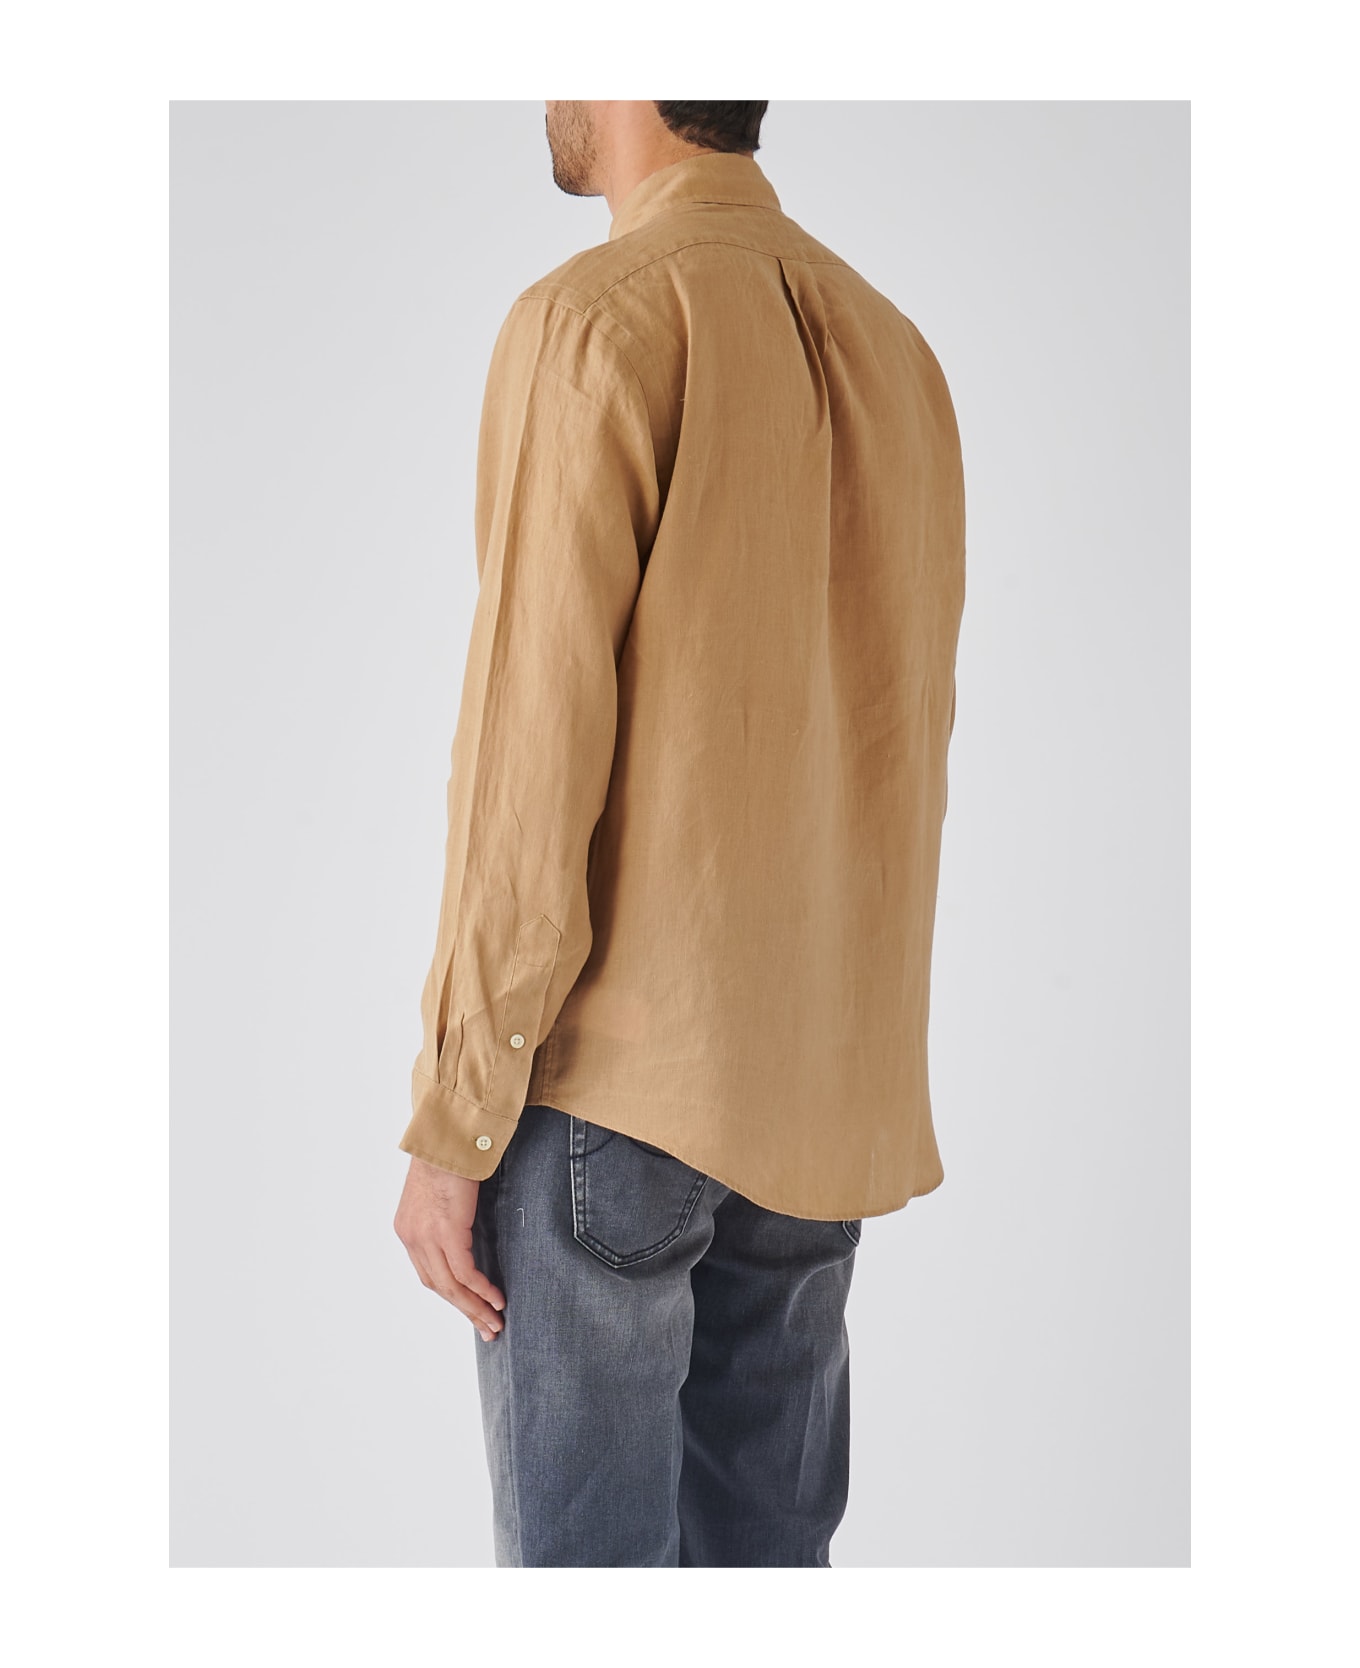 Polo Ralph Lauren Long Sleeve Sport Shirt Shirt - KAKI